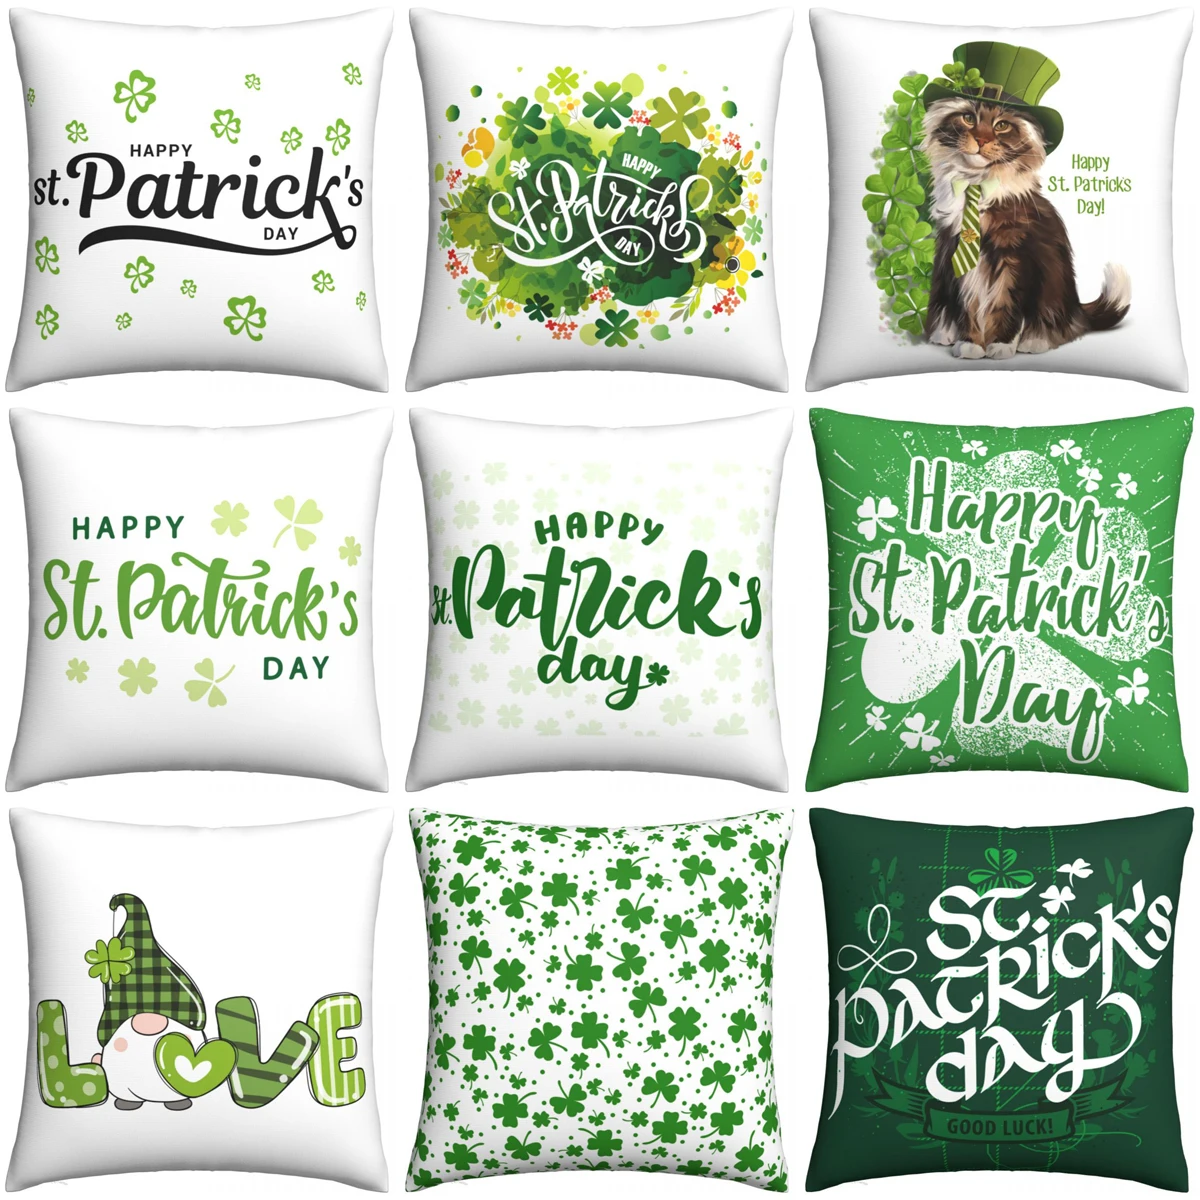 

Наволочка на подушку в стиле Св. Патрика, чехлы для подушек ирландского зеленого цвета на удачу, украшение для дома, 18x18 дюймов